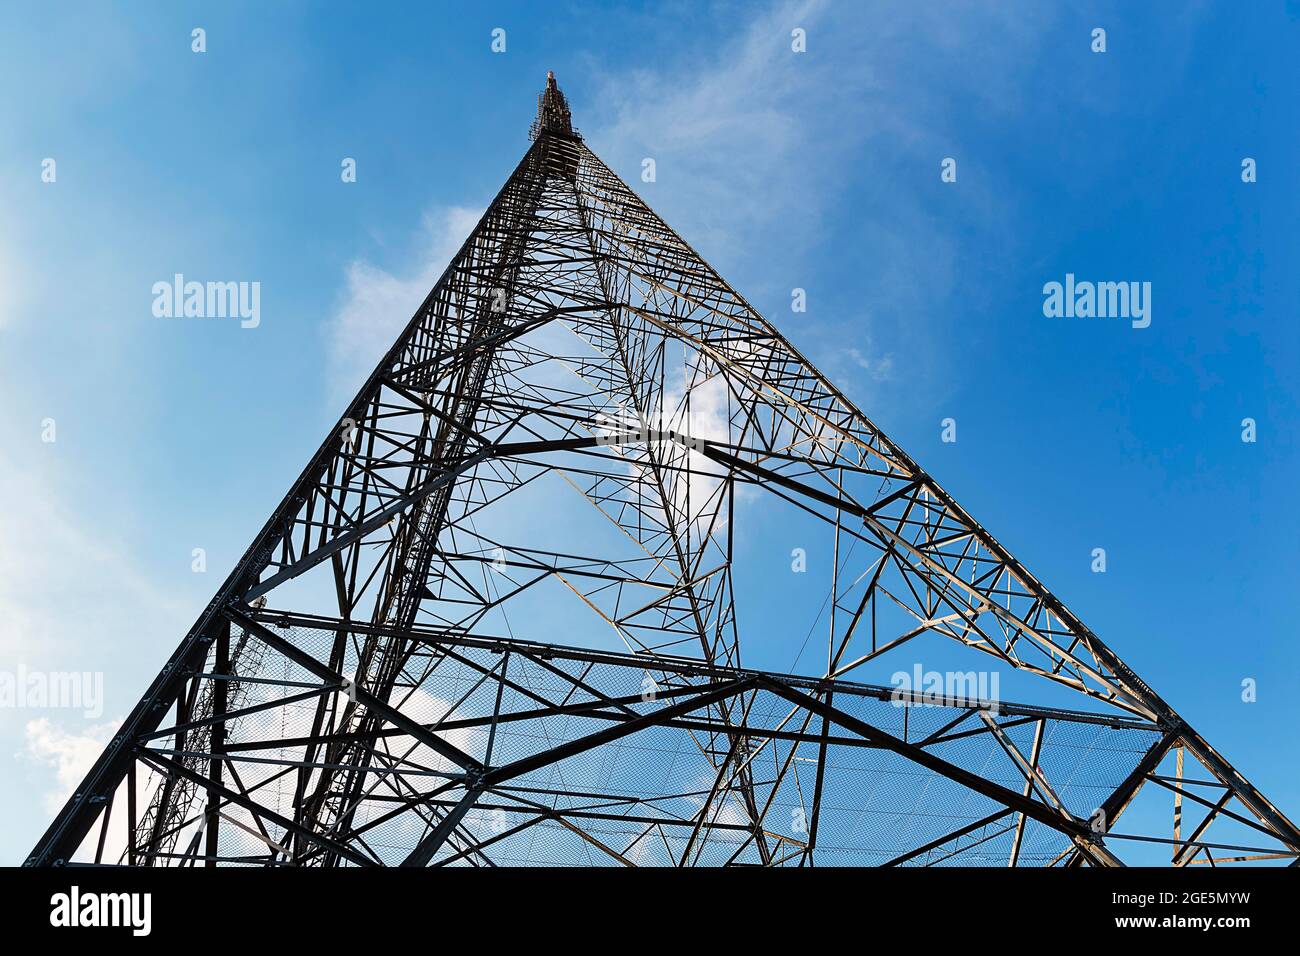 Transmission mast on the hill Bueyuek Camlica, Camlica, Istanbul, Turkey Stock Photo